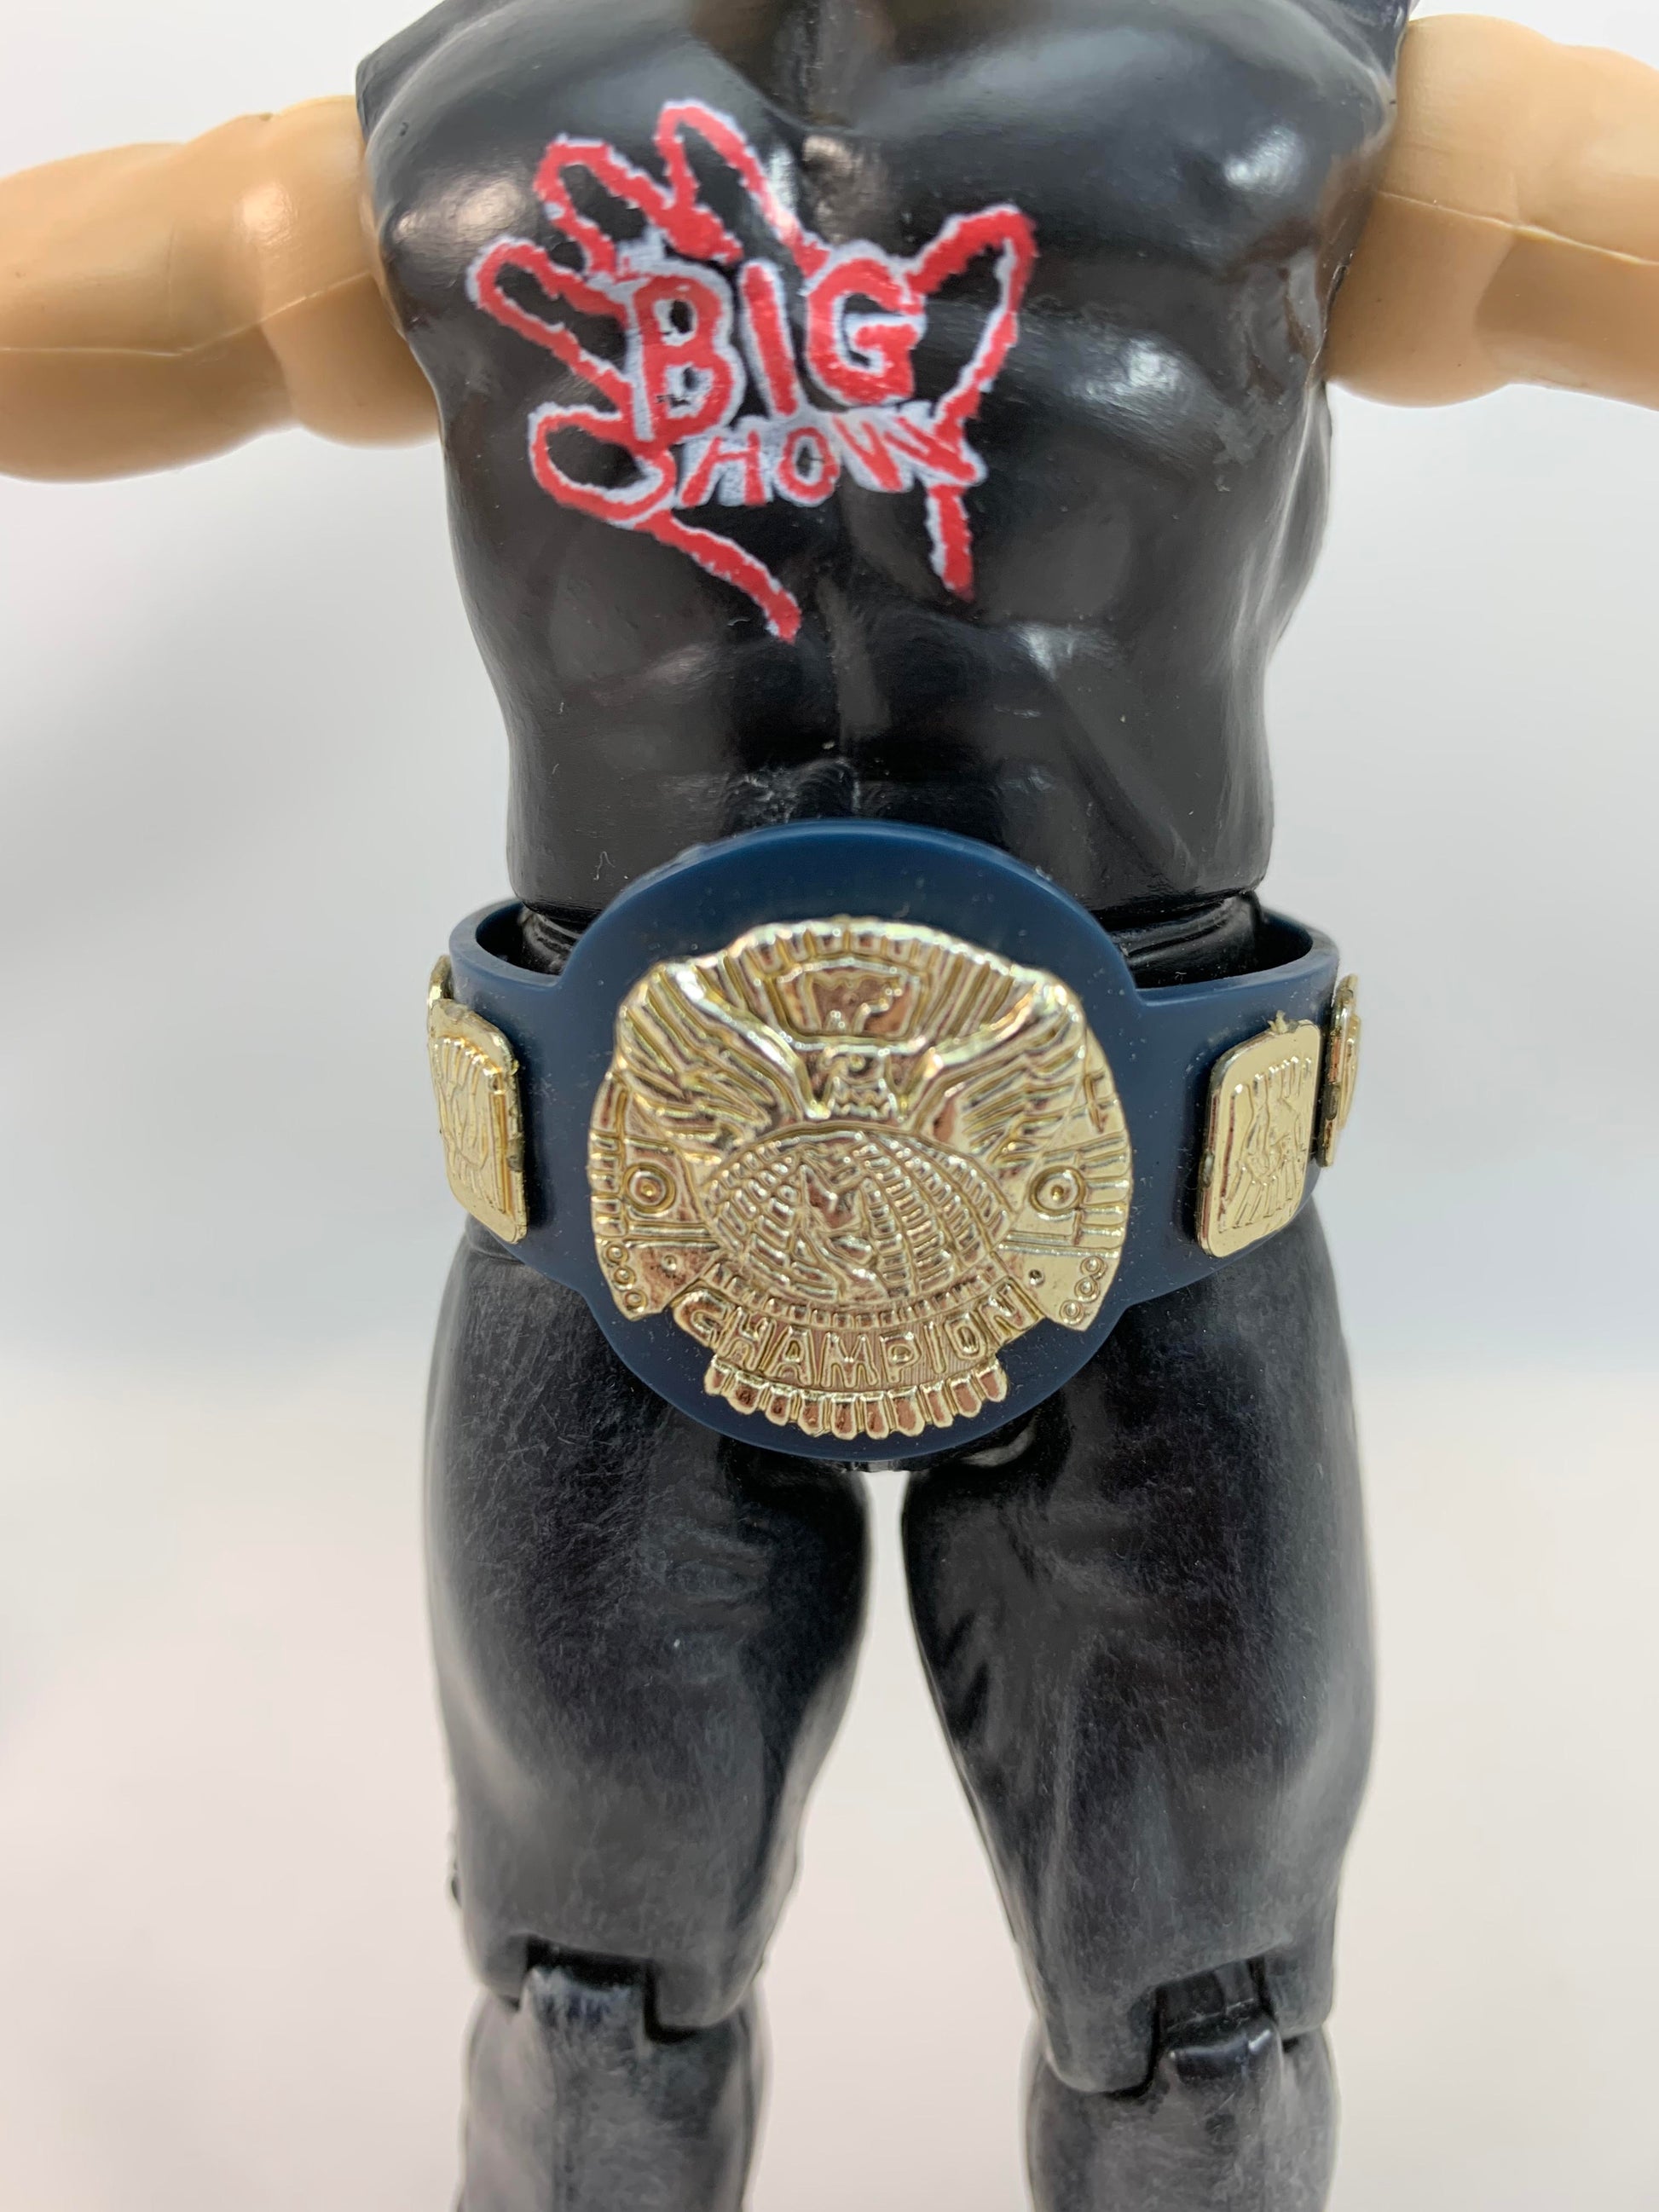 1999 JAKKS Pacific Titan Tron The Big Show - Loose Action Figure